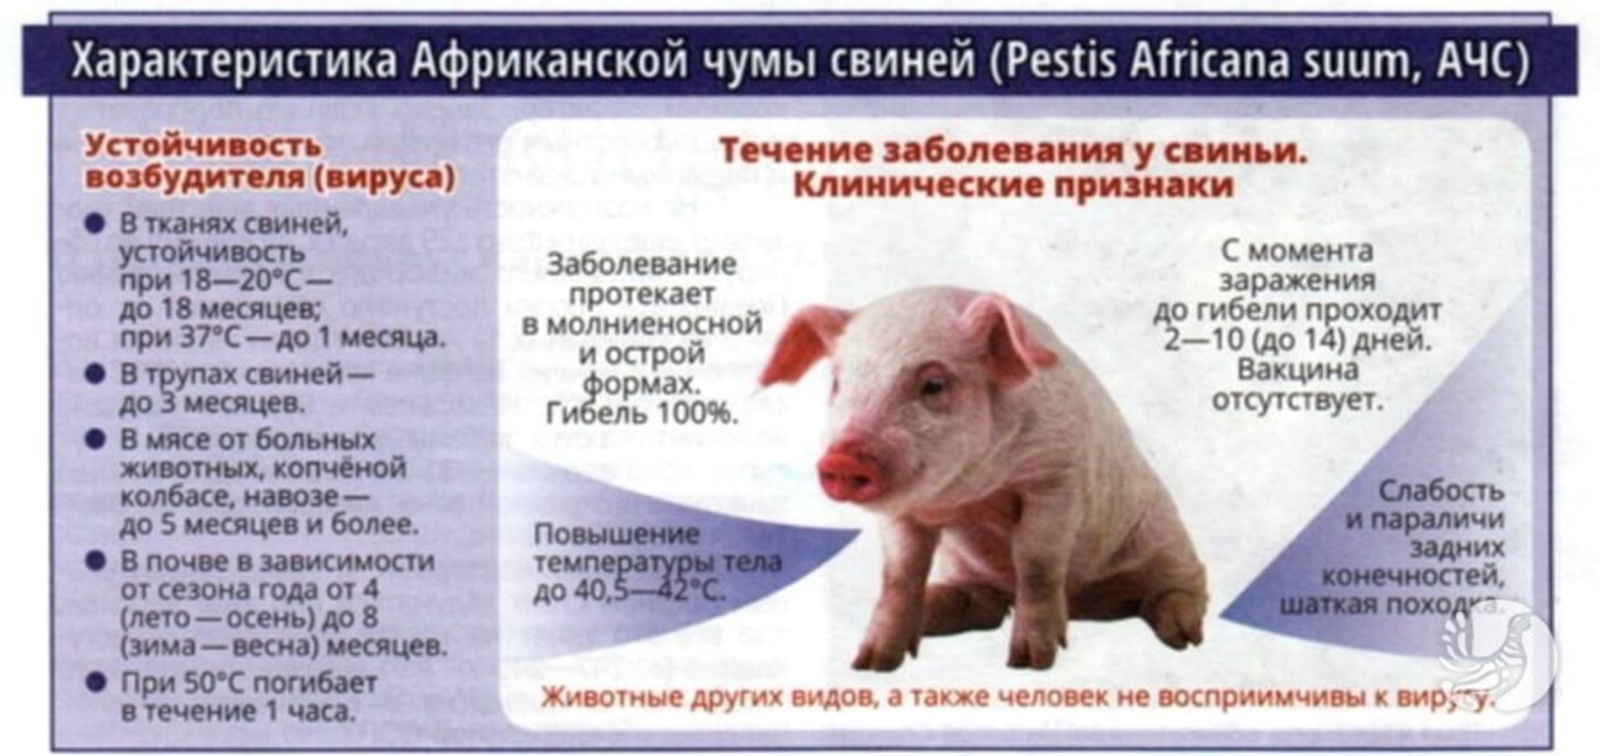 Африканская чума свиней выявлена в соседних с Башкирией регионах!